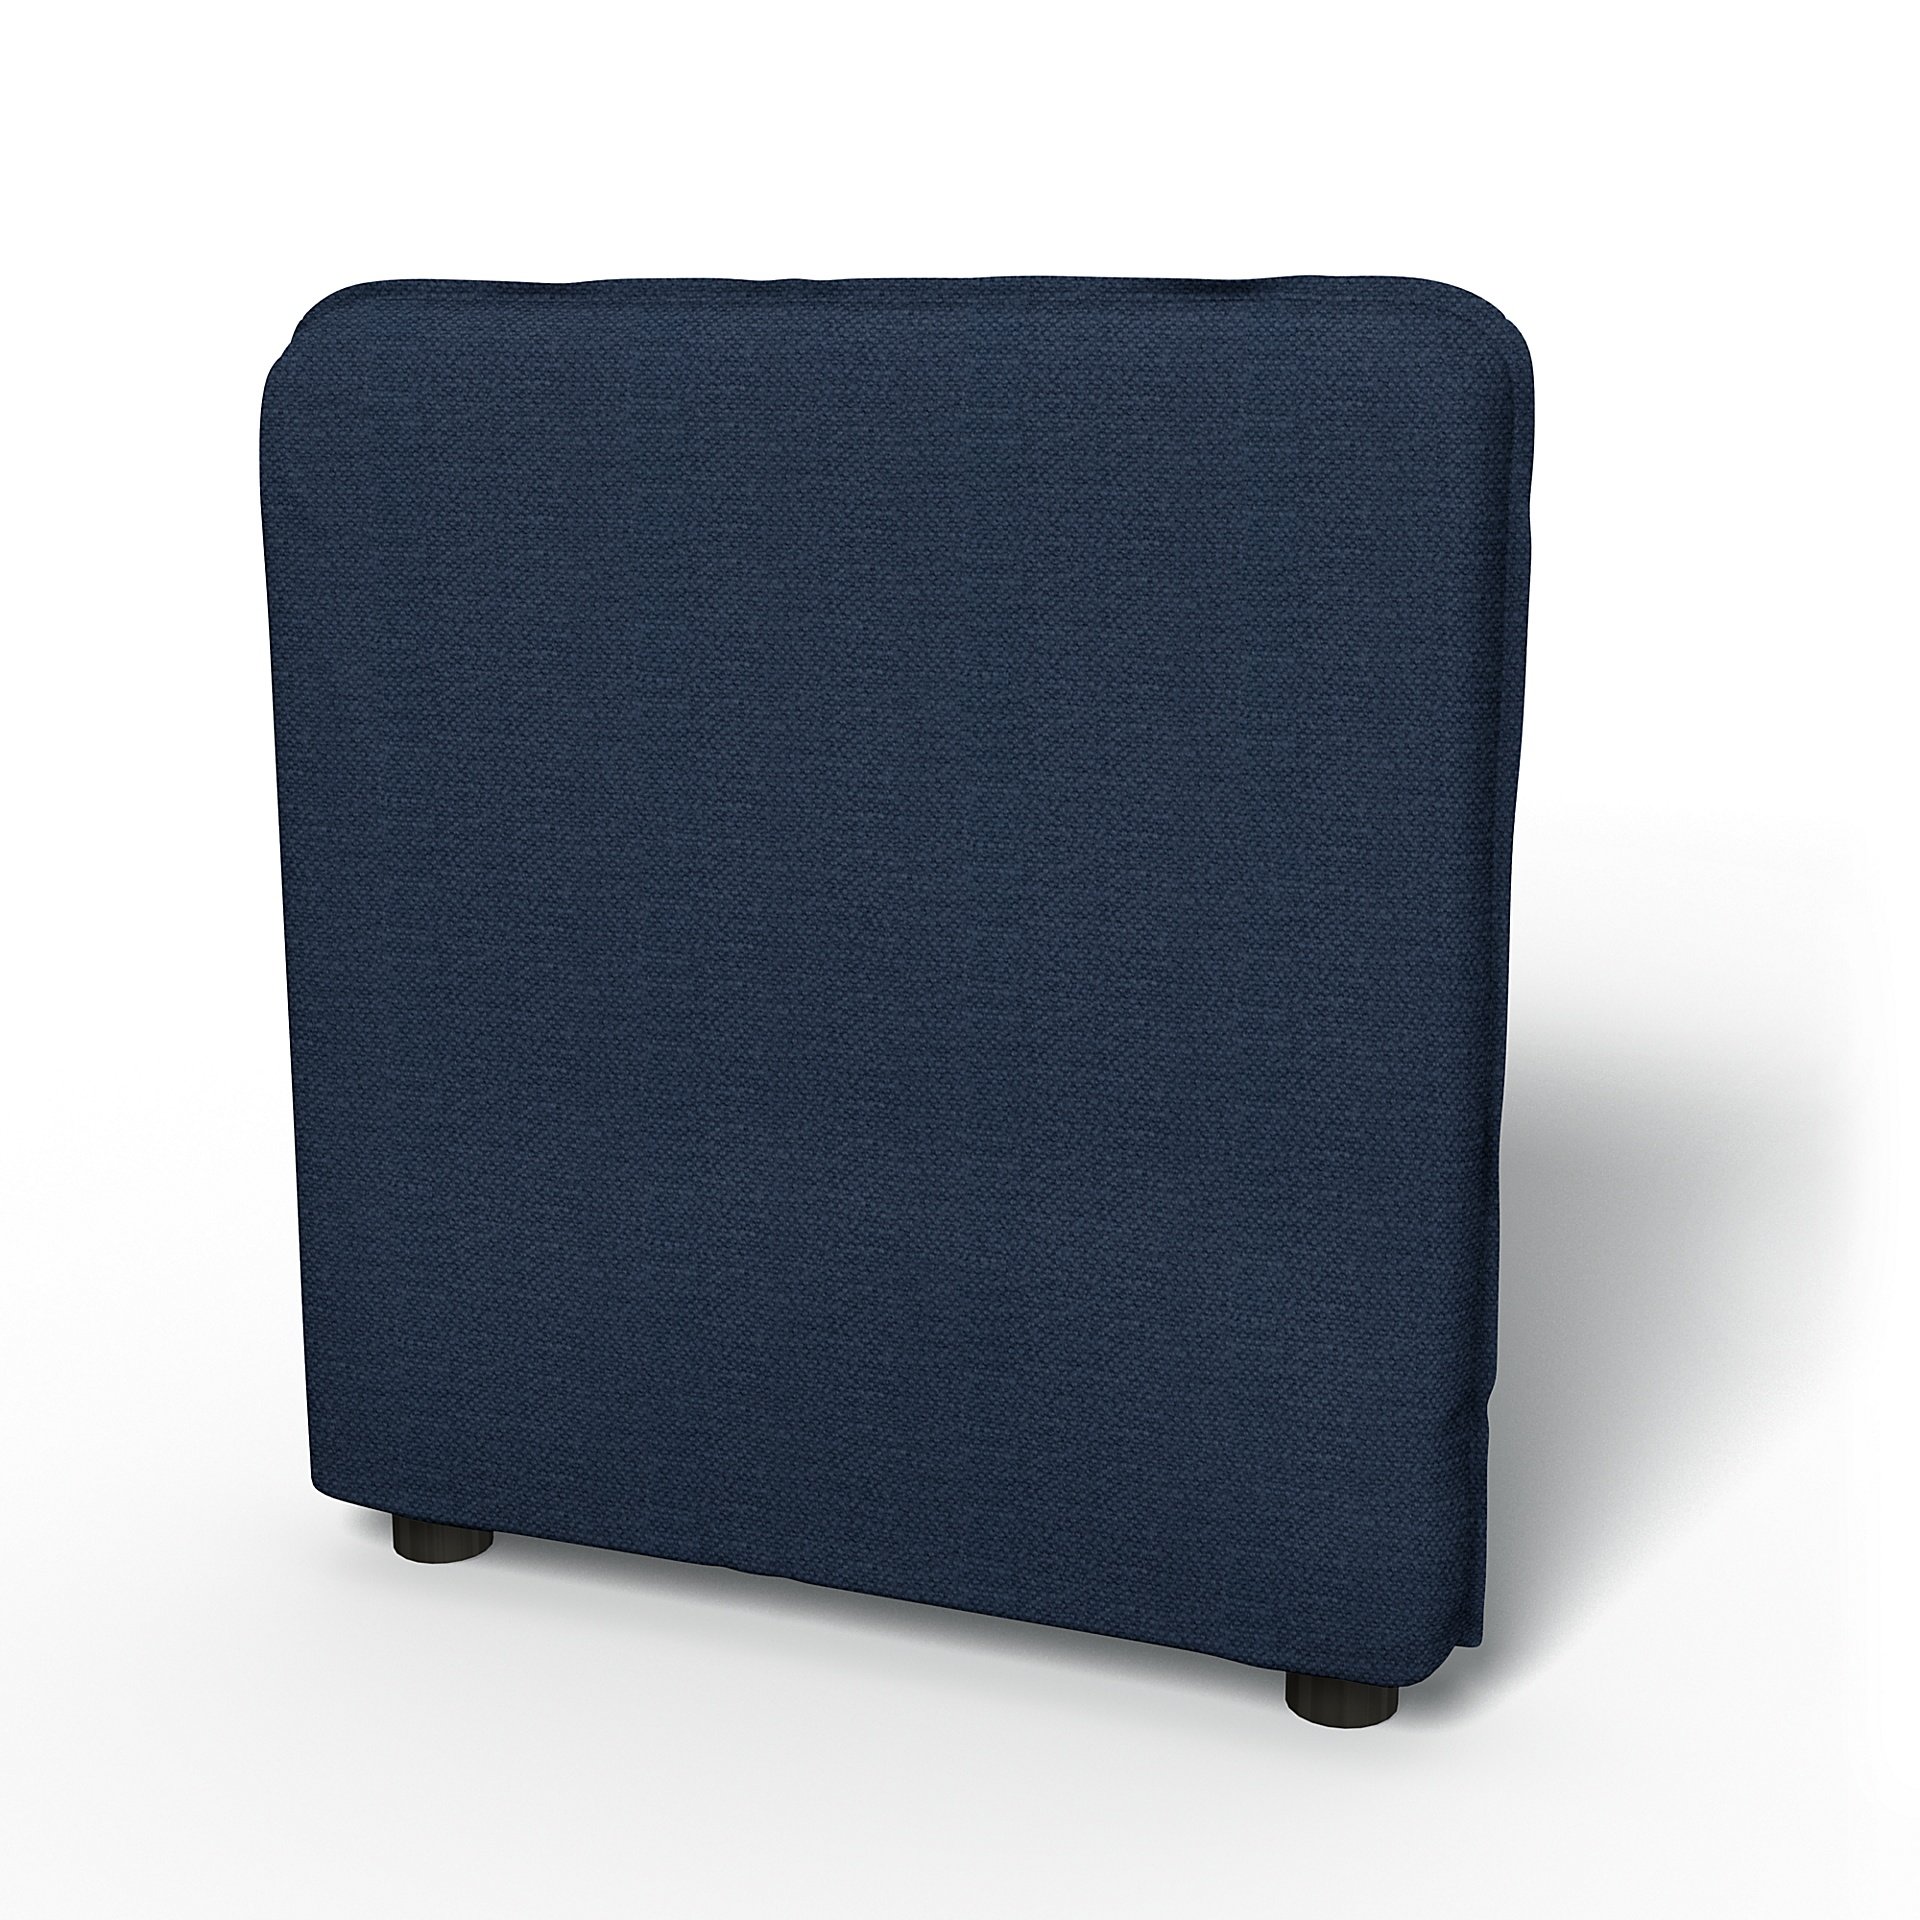 IKEA - Vallentuna Armrest Cover (80x60x13cm), Navy Blue, Linen - Bemz